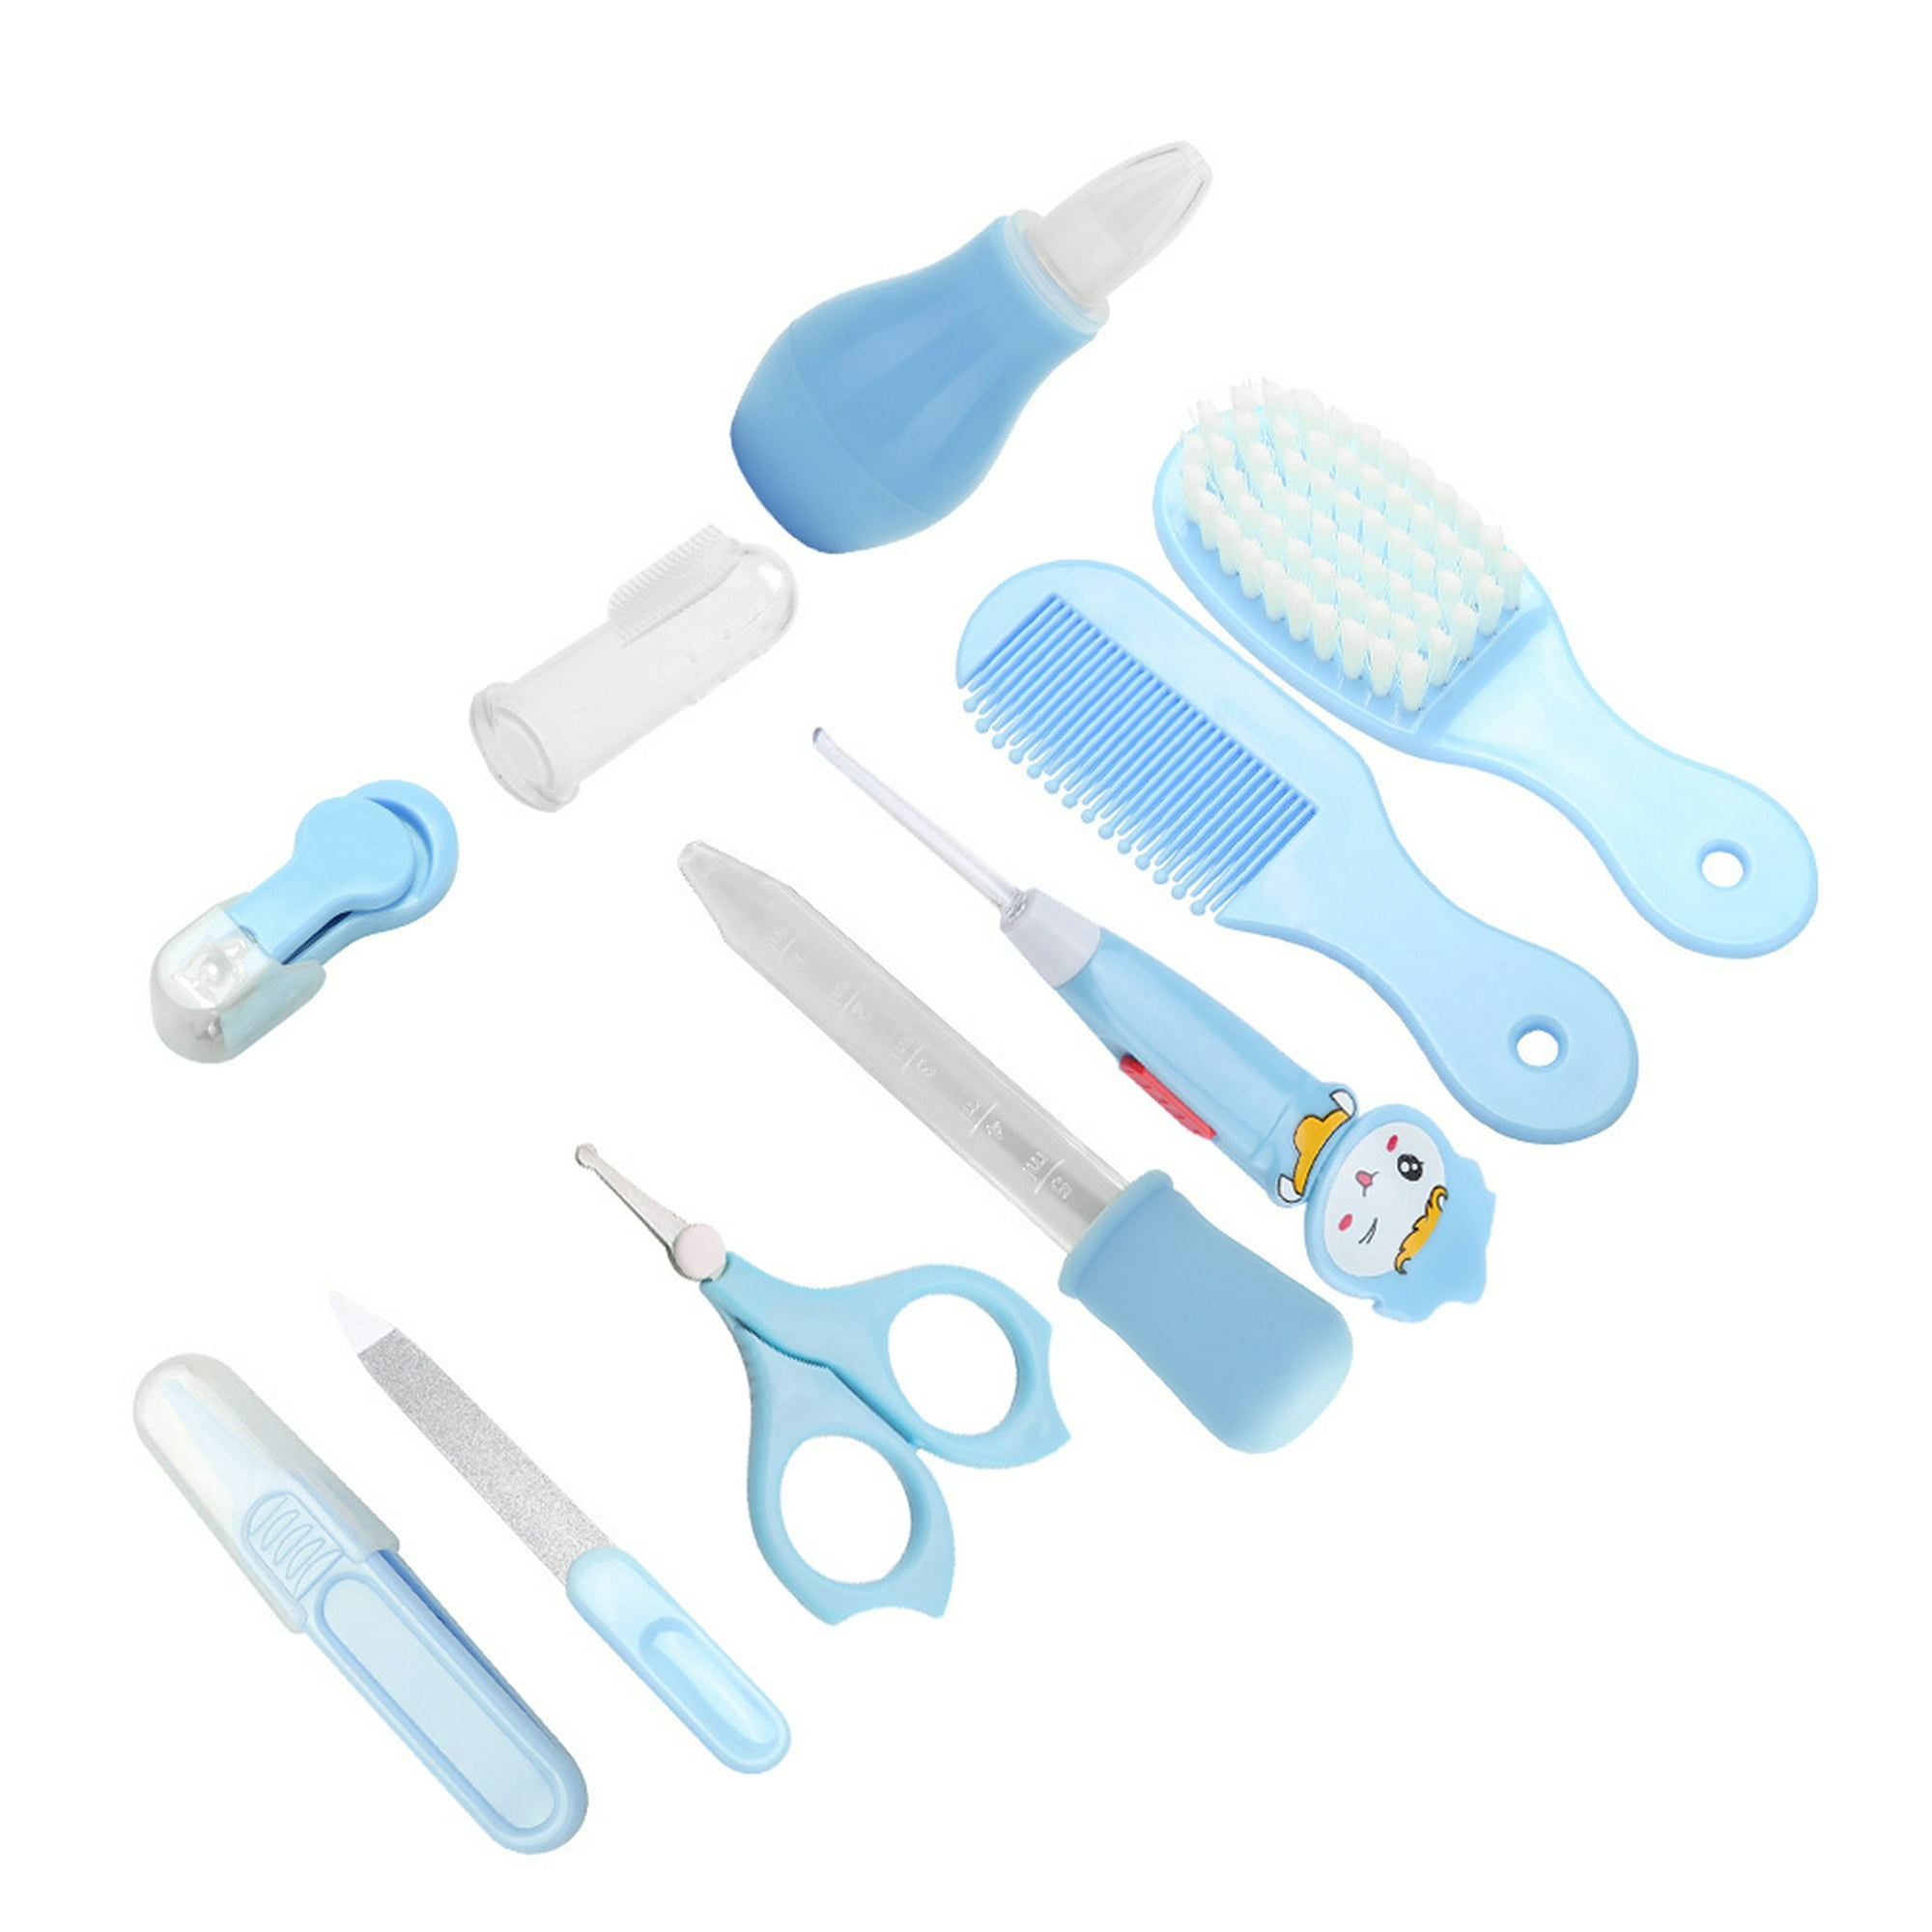  Kit 19 en 1 de aseo para bebés, el juego de cuidado de la salud  para bebés recién nacidos incluye cepillo de pelo, cepillo de dientes,  cortaúñas, aspirador nasal, limpiador de